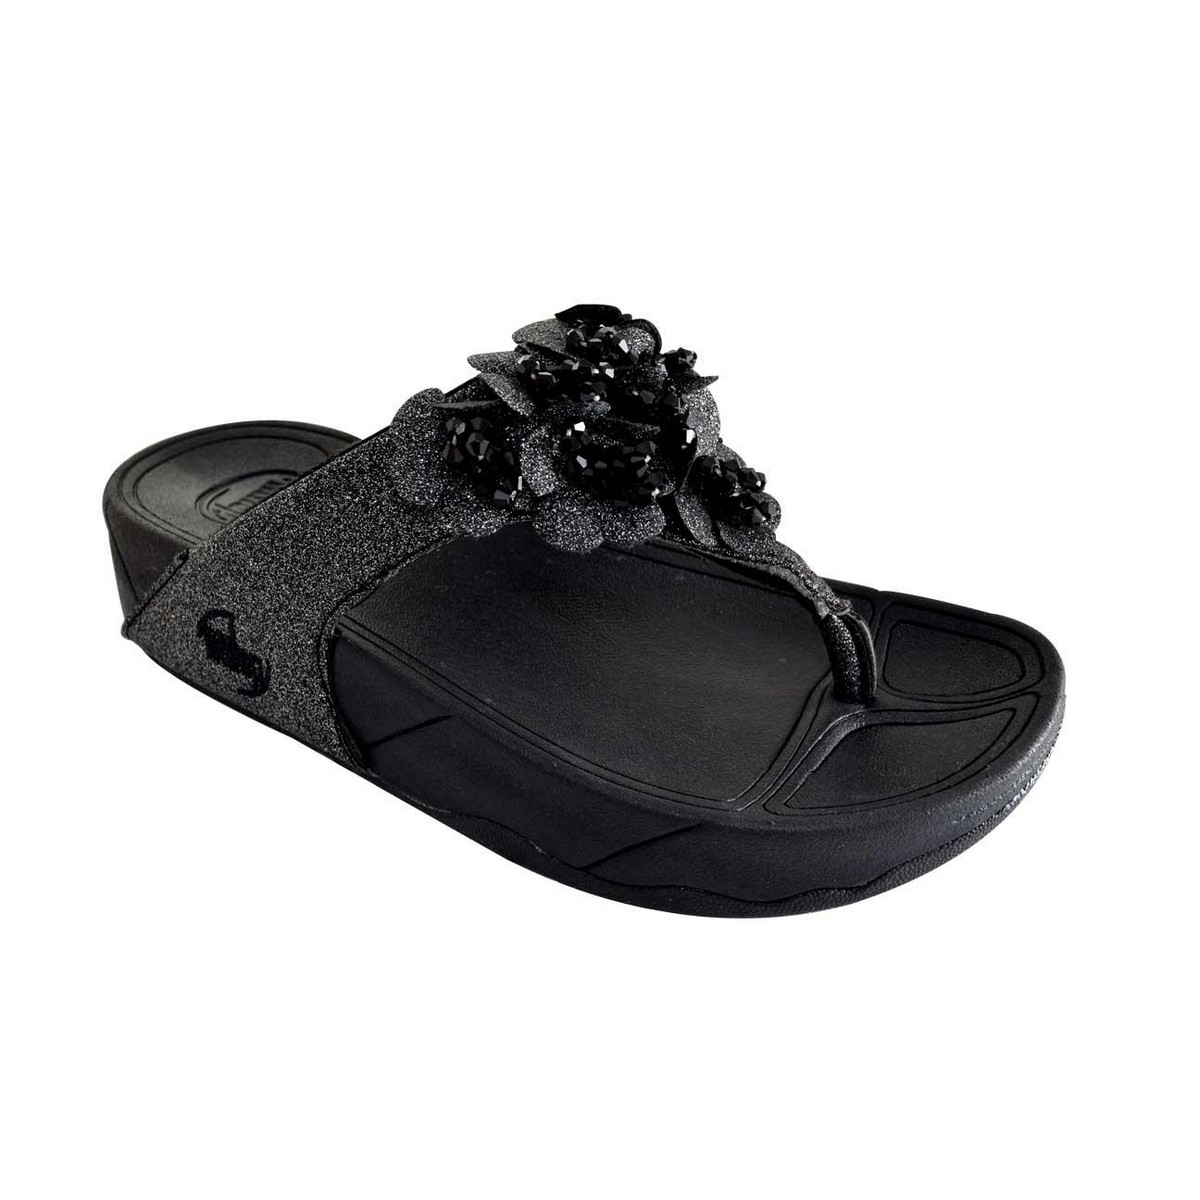 Discover 122+ fitflop womens sandals sale best - vietkidsiq.edu.vn